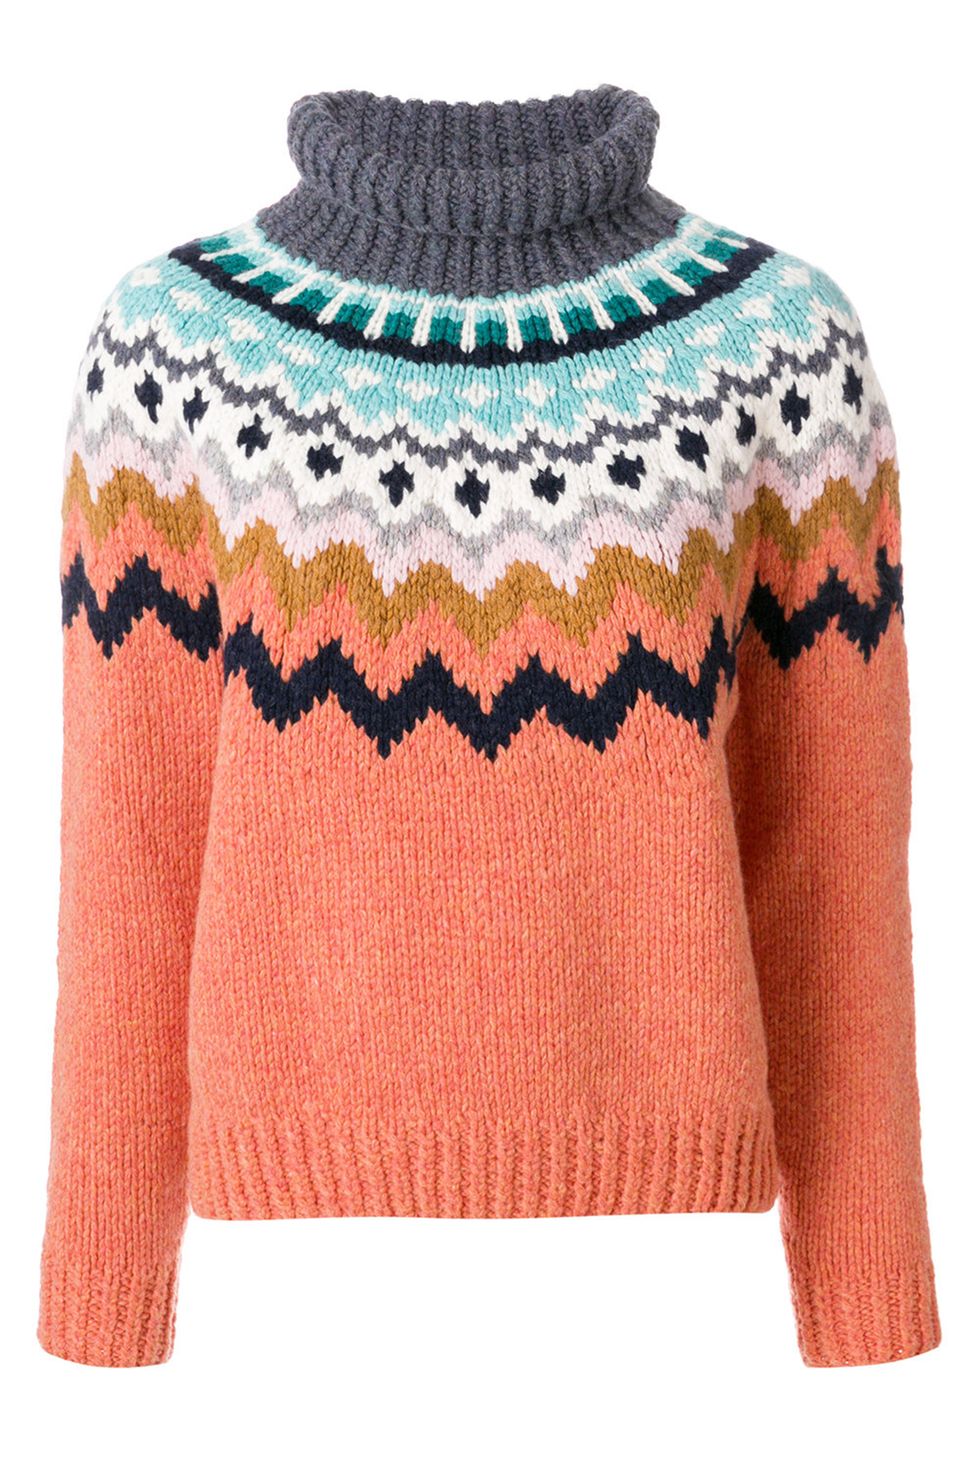 Alpine knit